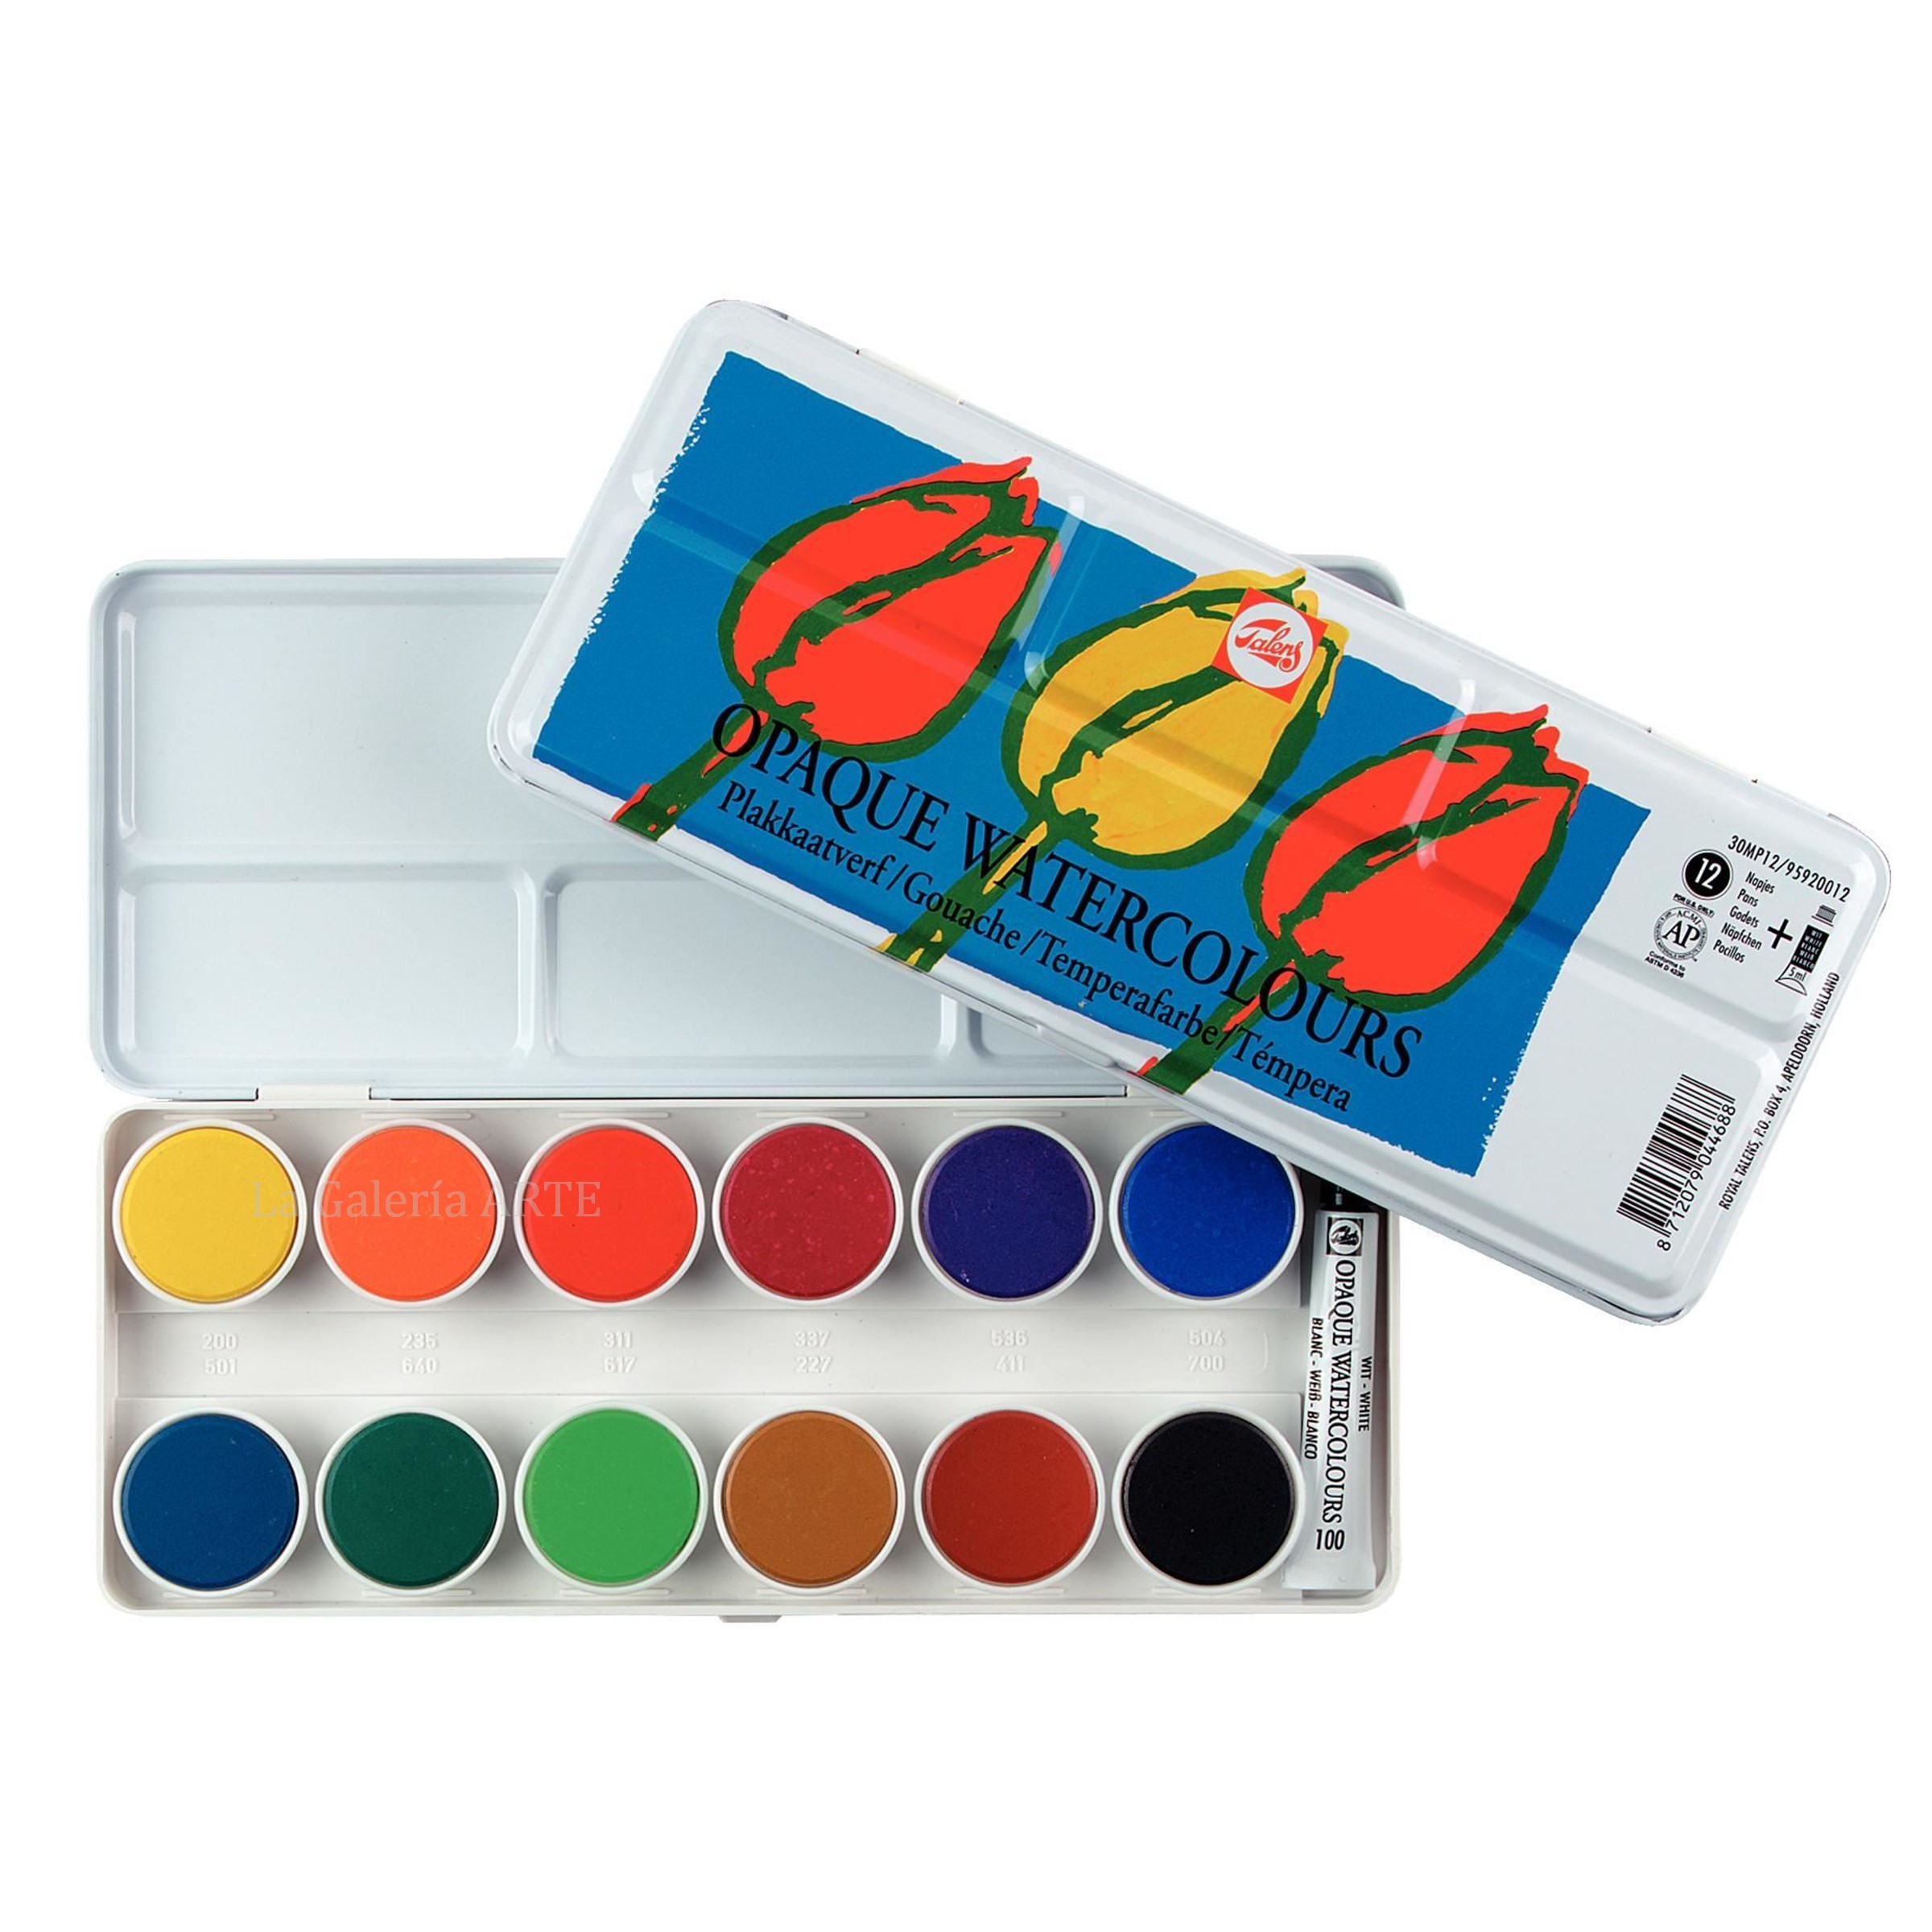 Estuche Pocket Box 12 + 3 pastillas Acuarela Van Gogh - La Galería